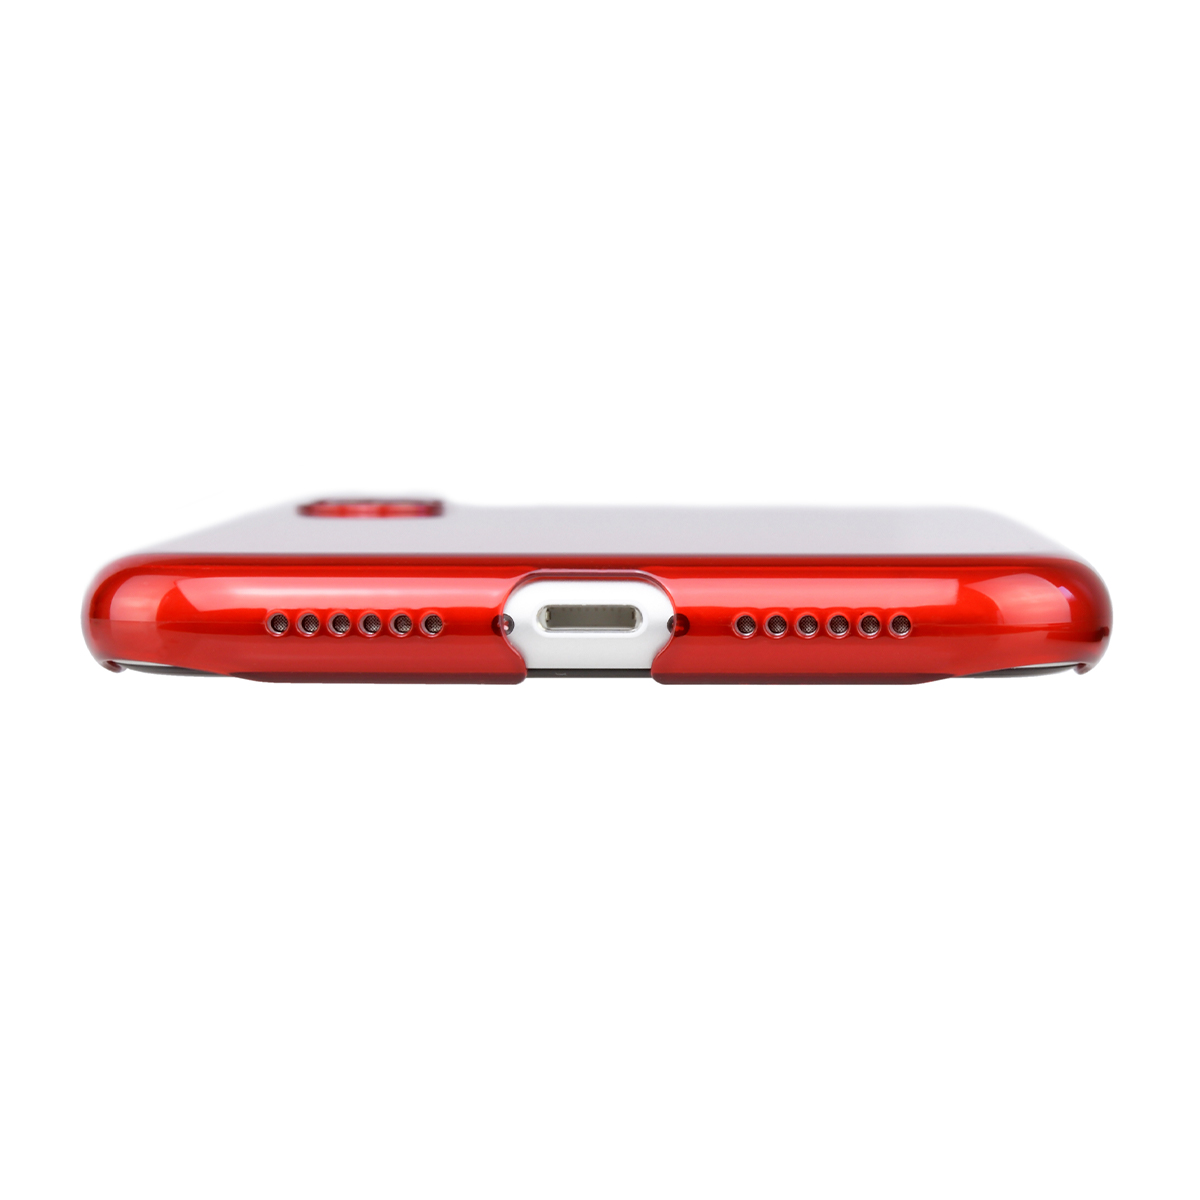 楽天市場 公式 パワーサポート エアージャケット クリアレッド Iphone Xr ケース 赤 Red パワーサポート 公式